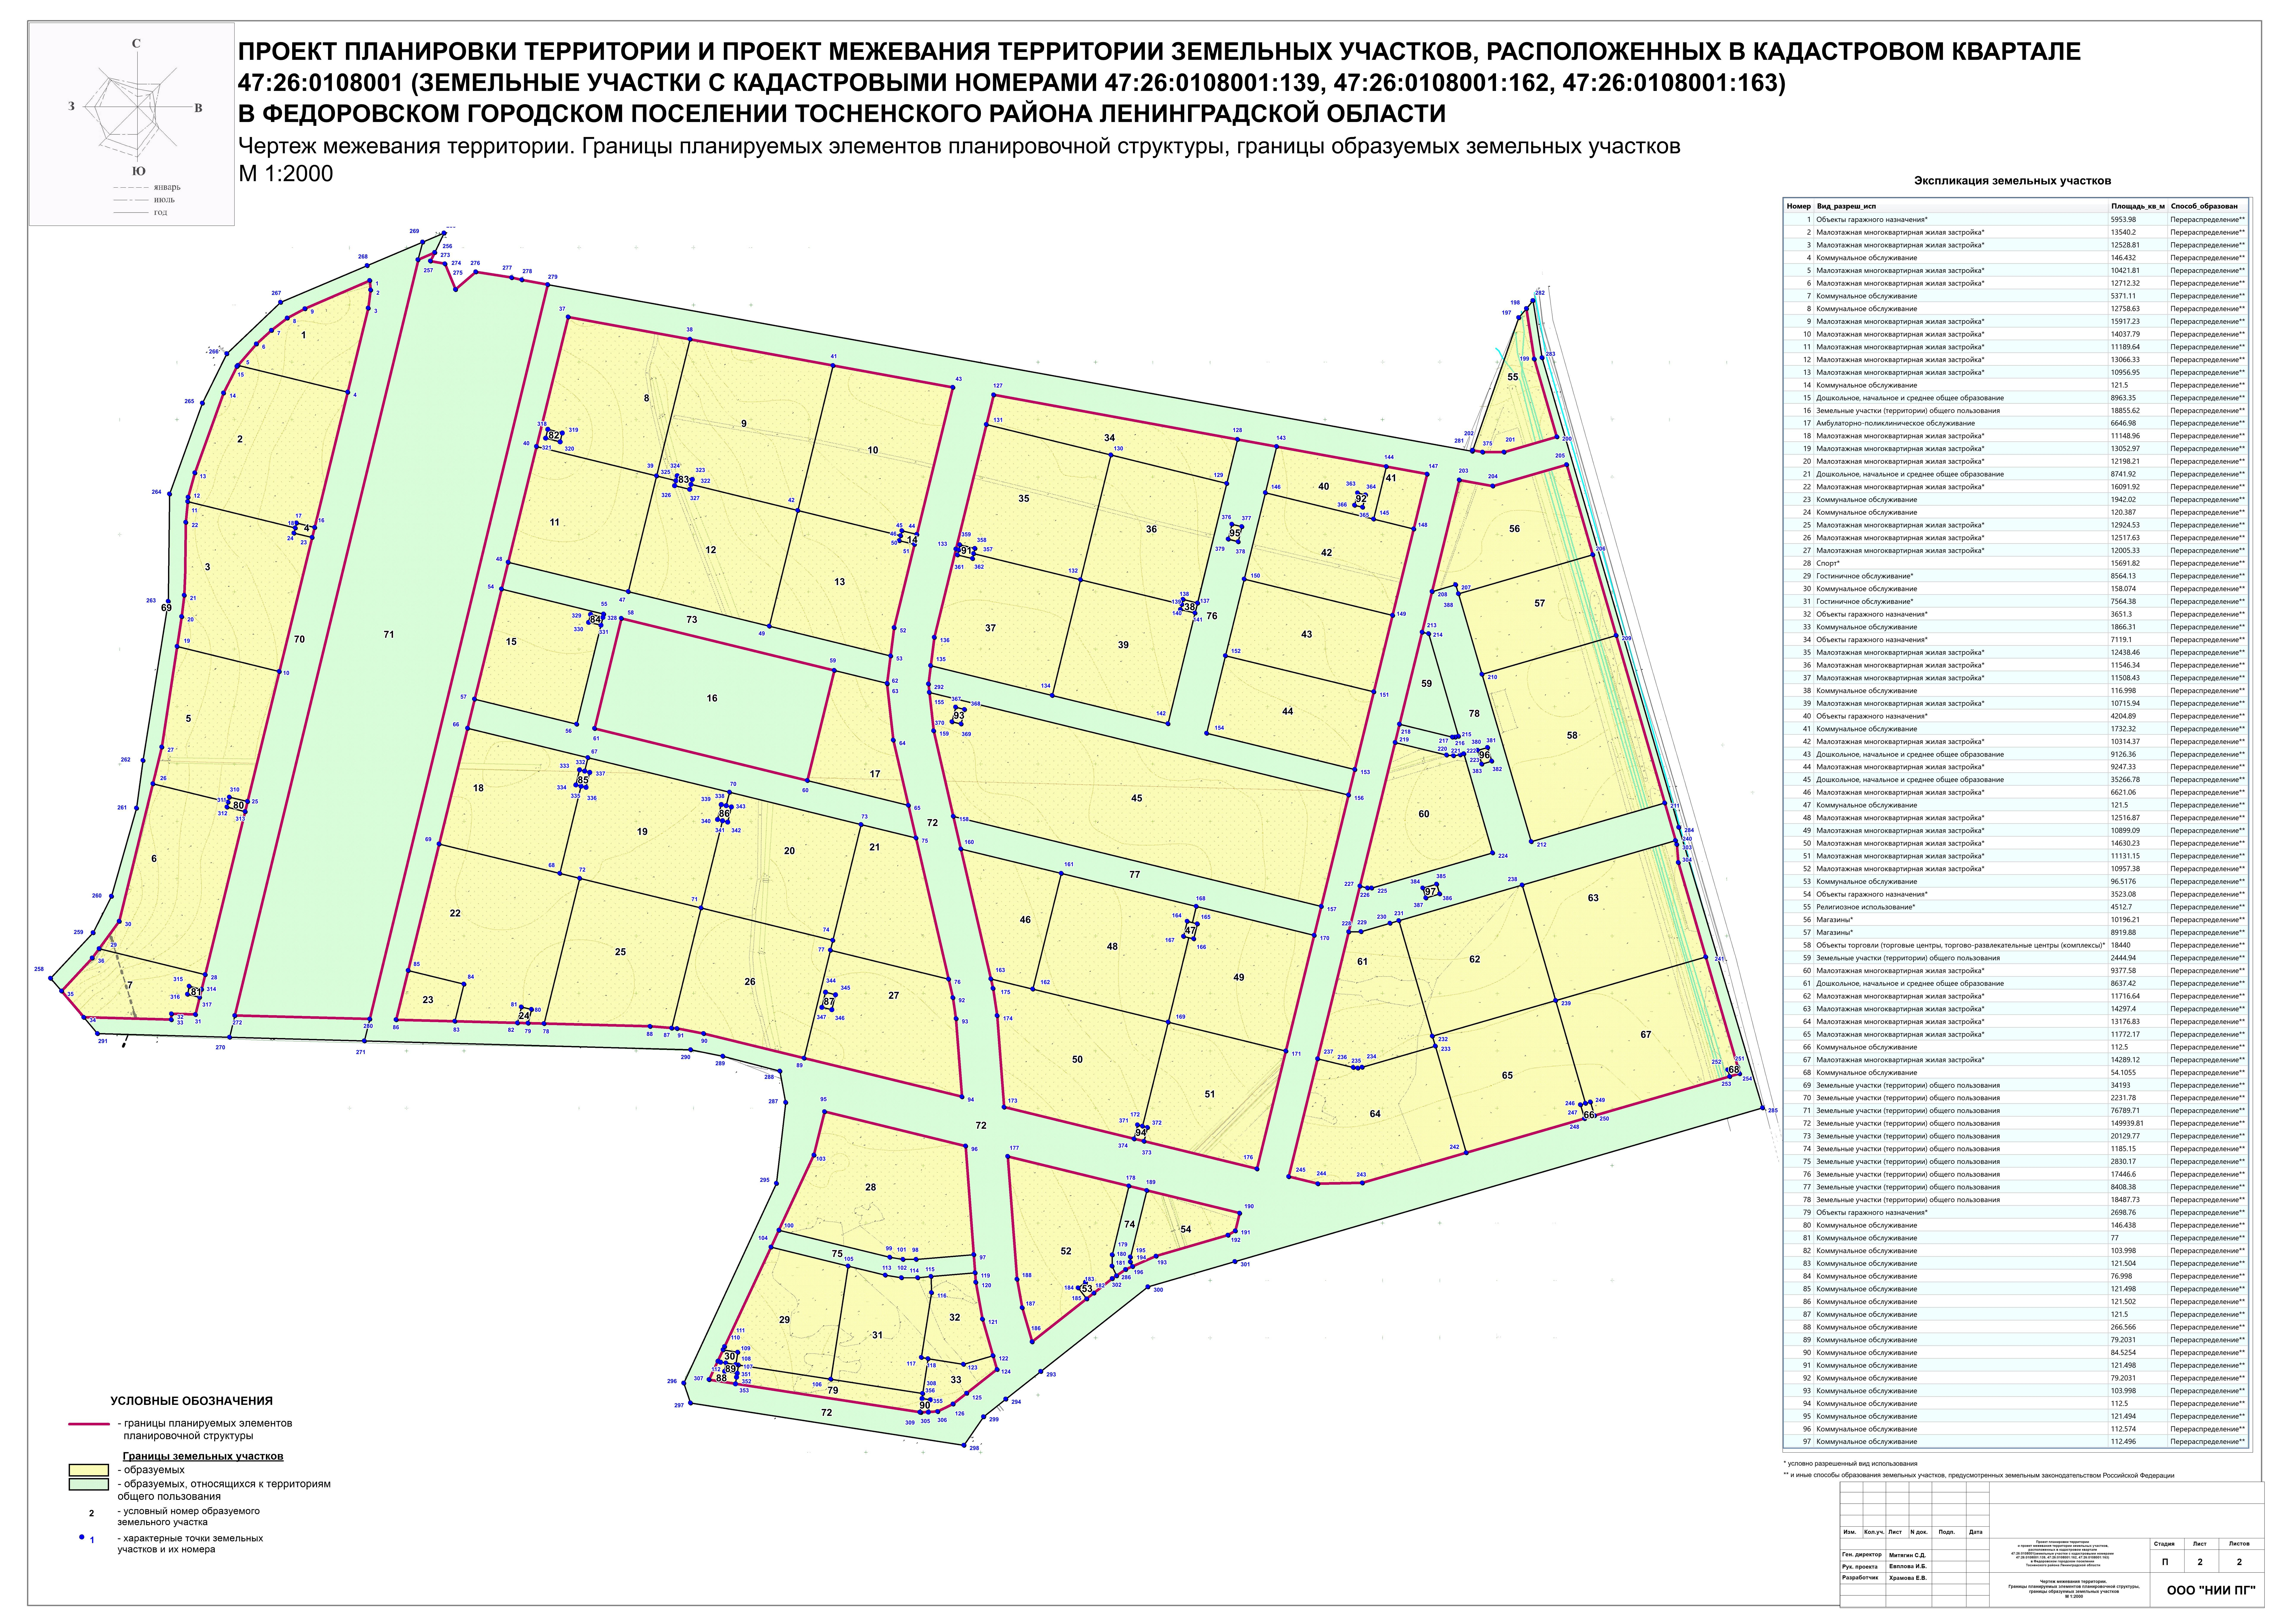 Проект планировки территории и проект межевания территории: требования к разработке и примеры